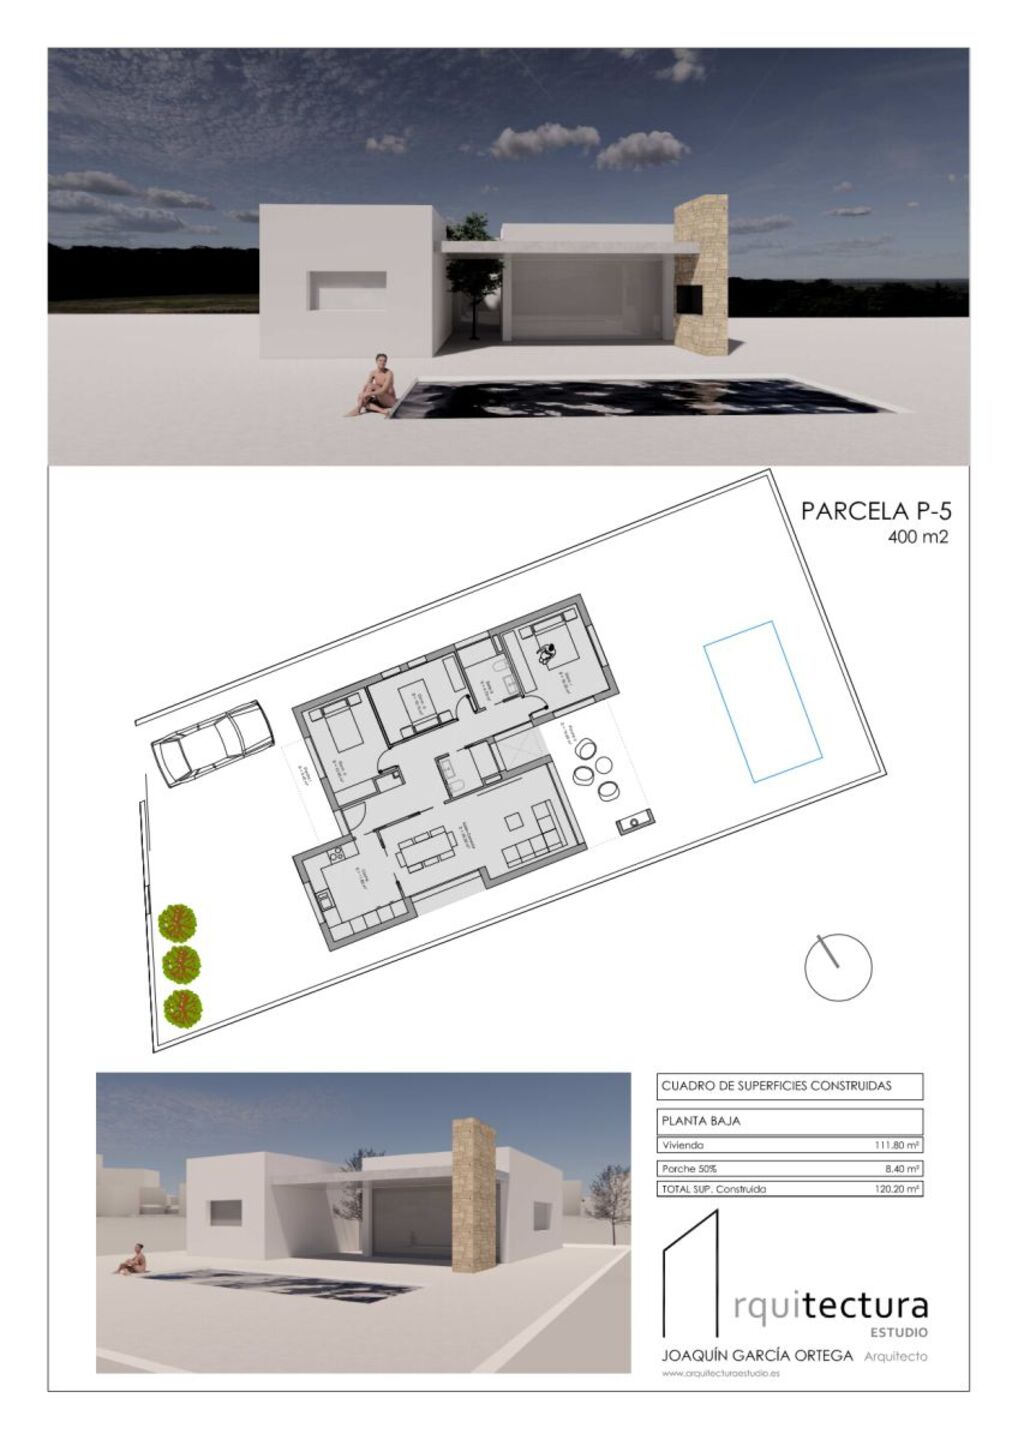 R22243: Terreno Urbano en venta en Huercal-Overa, Almería